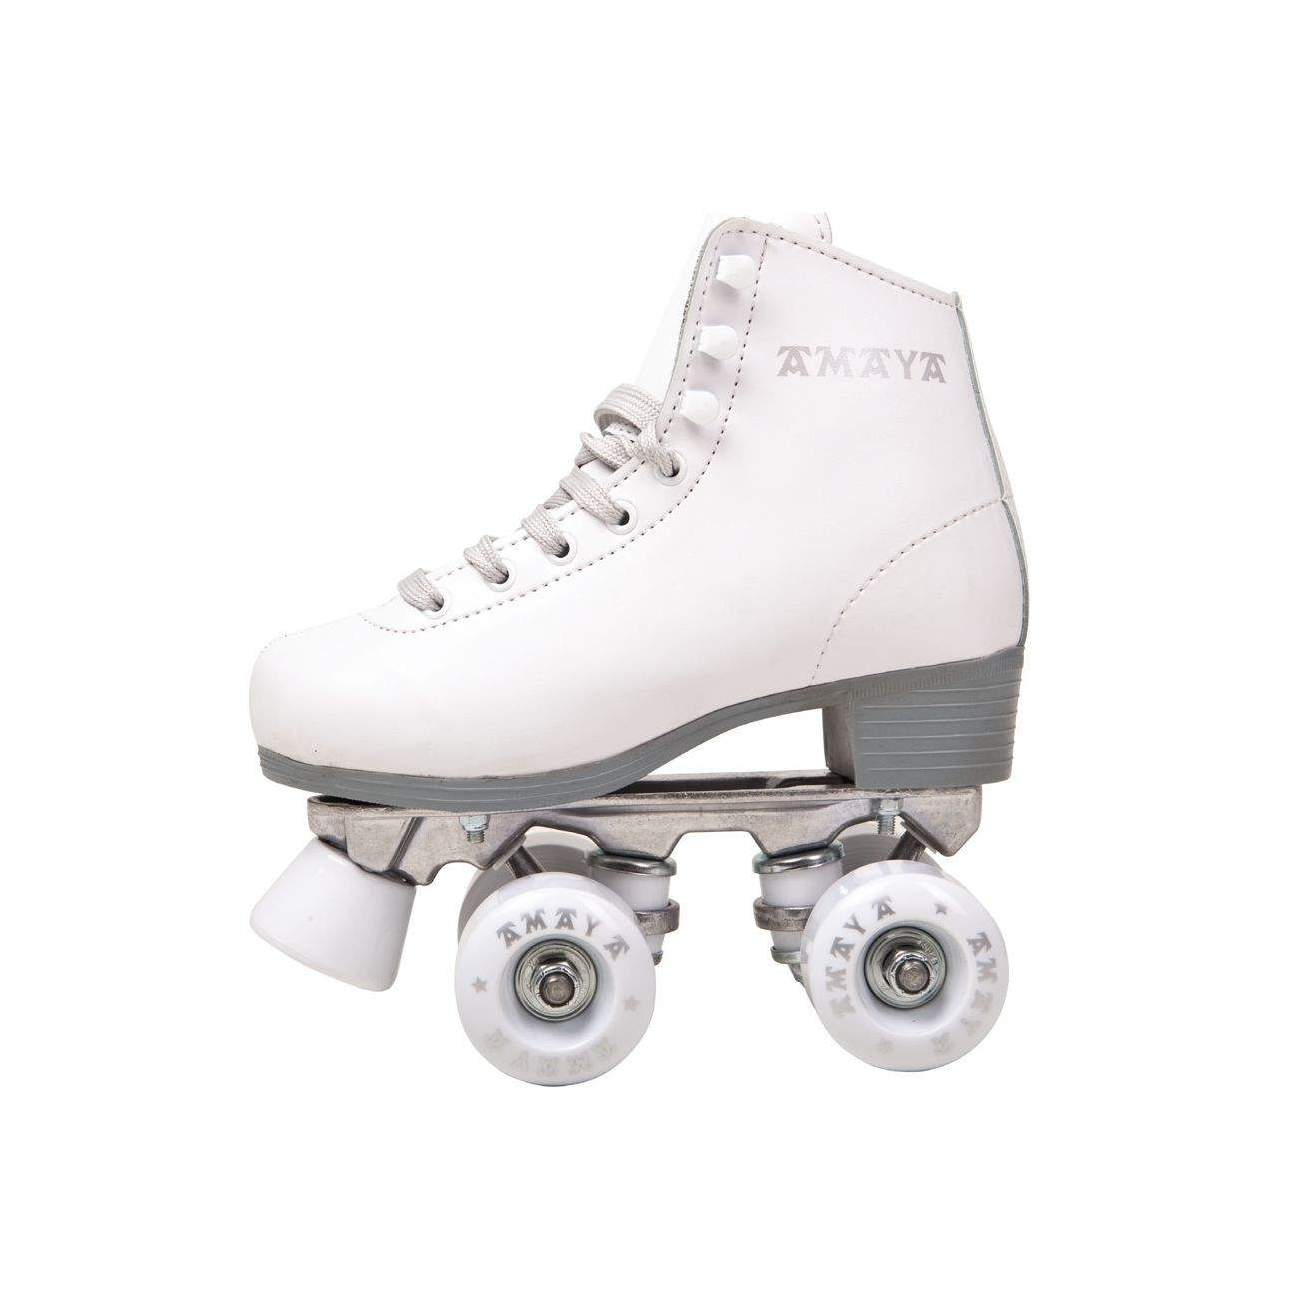 Los 10 mejores patines de 4 ruedas para niños: guía de compra